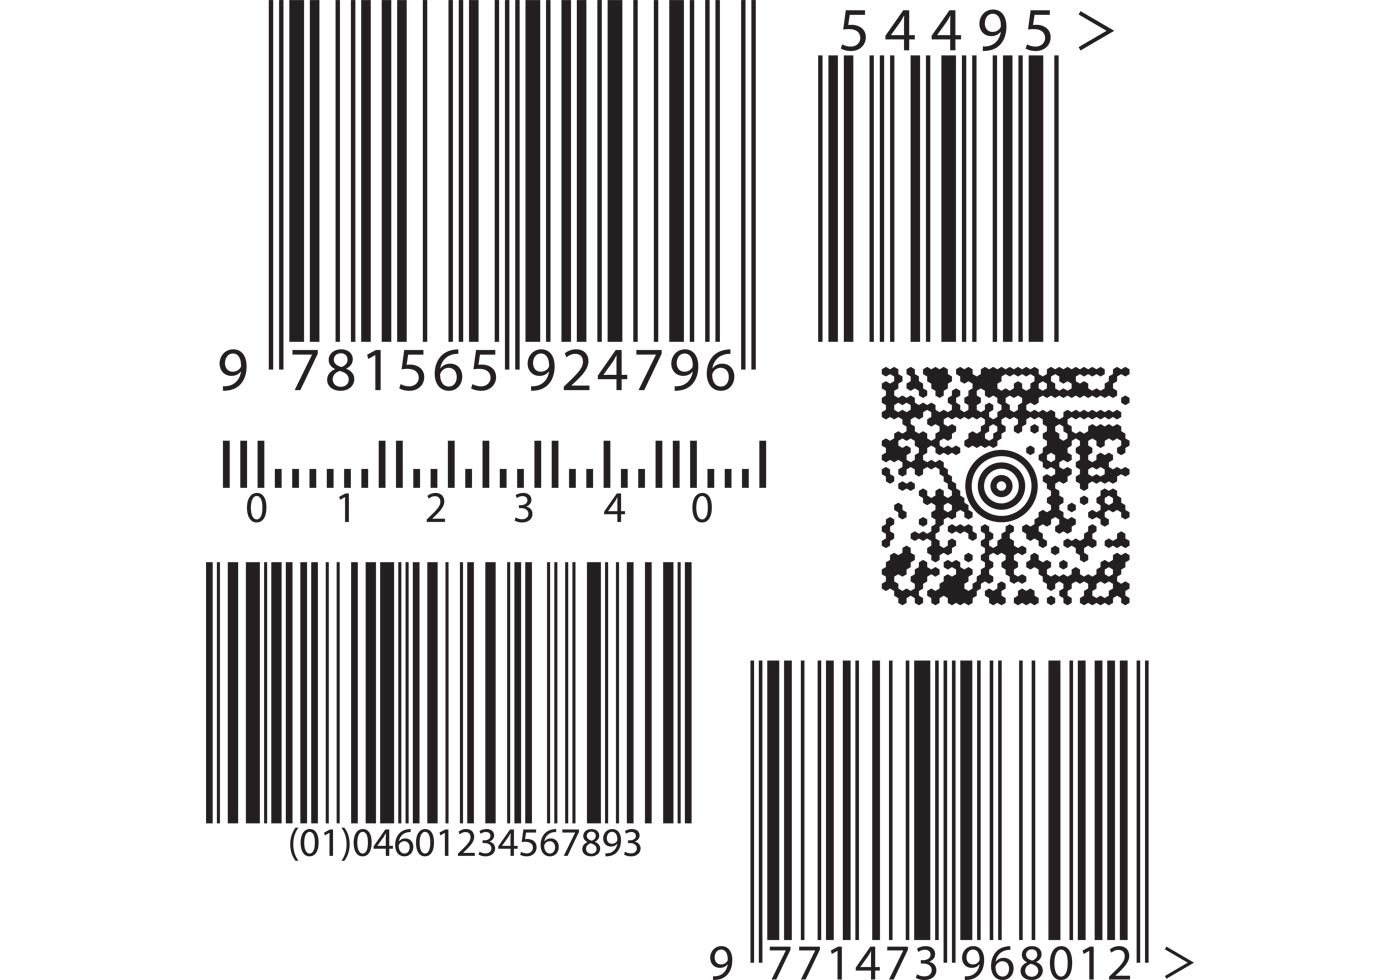 Download Barcode Vectors - Download Free Vector Art, Stock Graphics ...